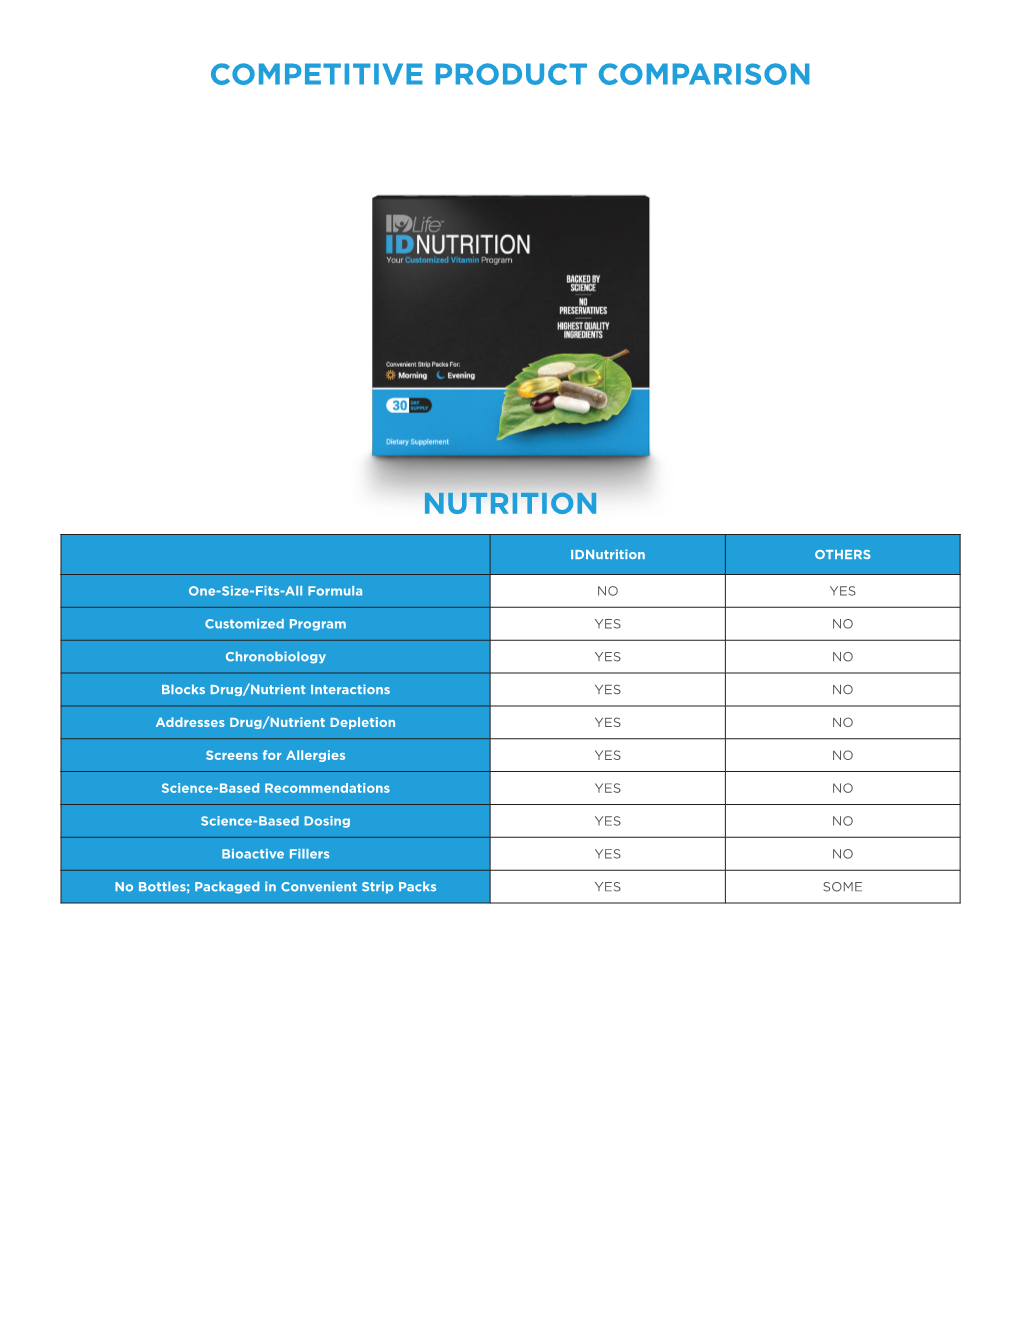 Nutrition Competitive Product Comparison